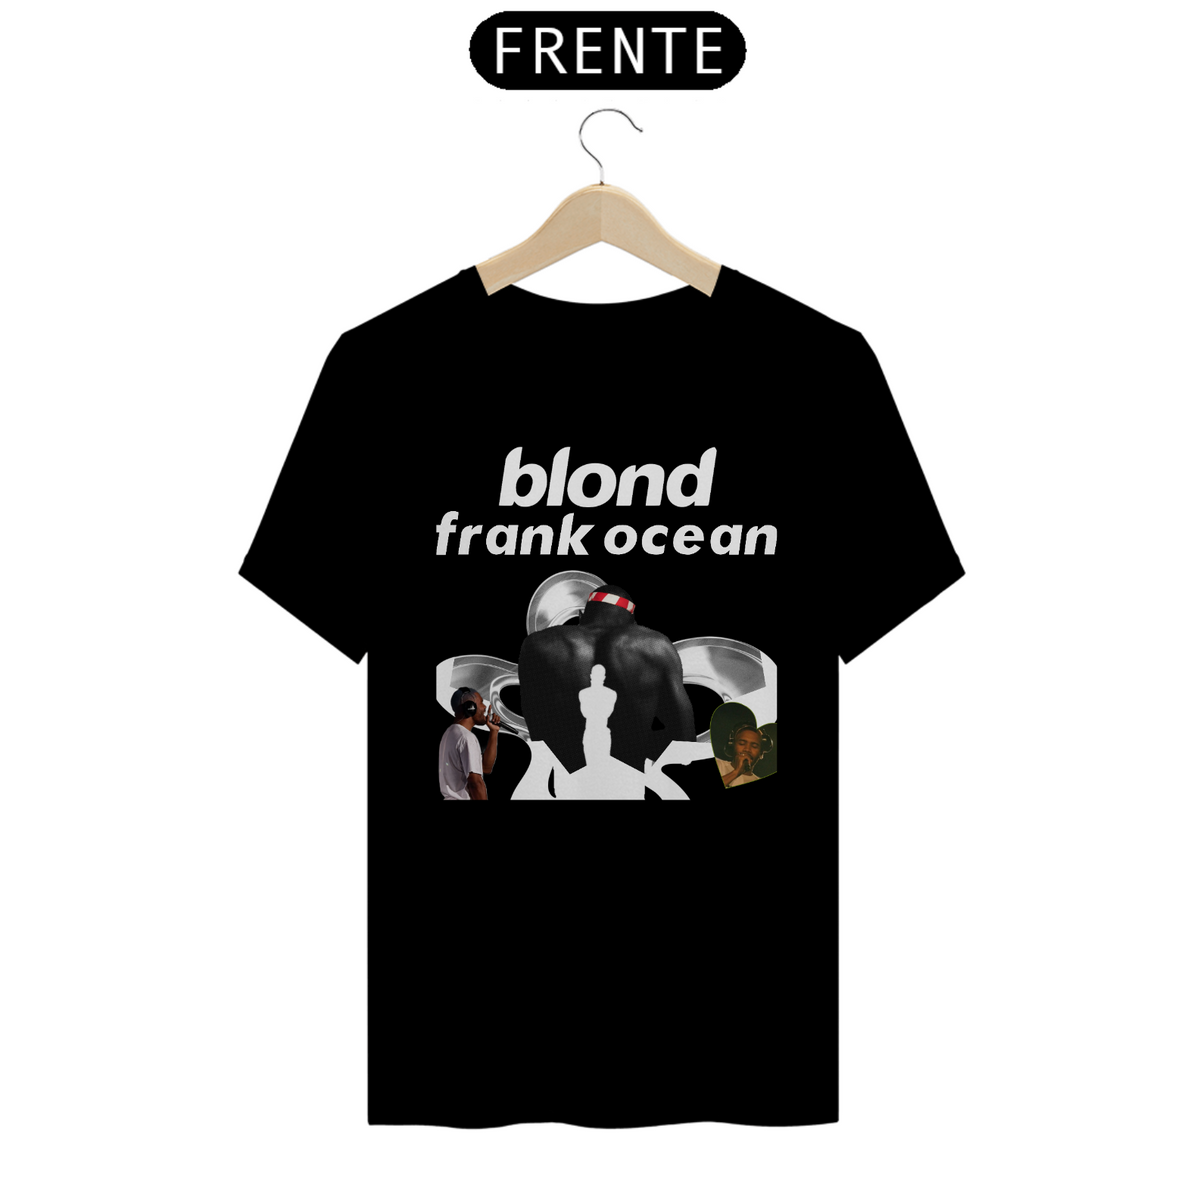 Nome do produto: BLOND FRANK OCEAN